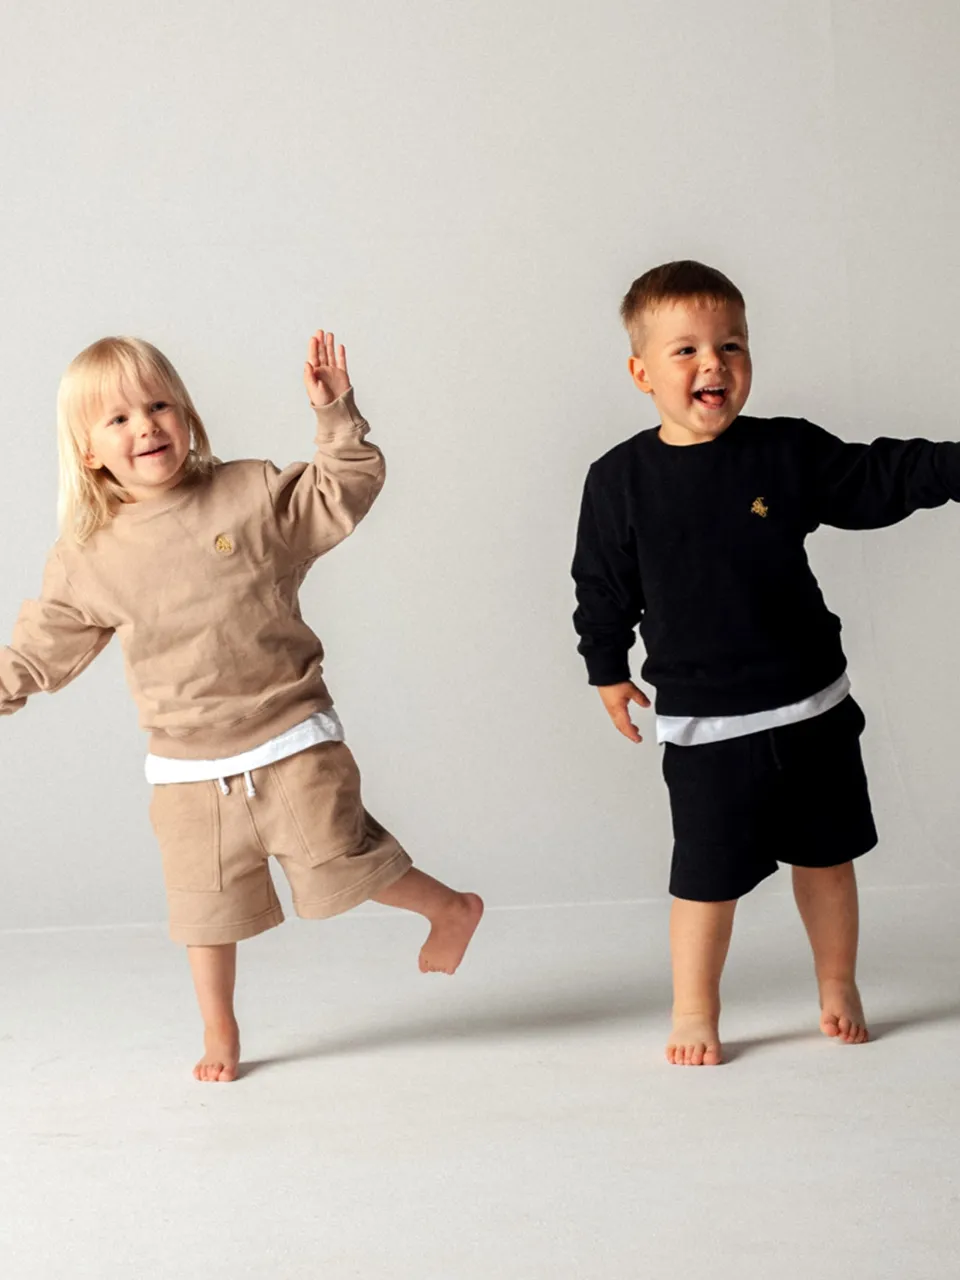 беларусы запустили детский бренд одежды в Польше